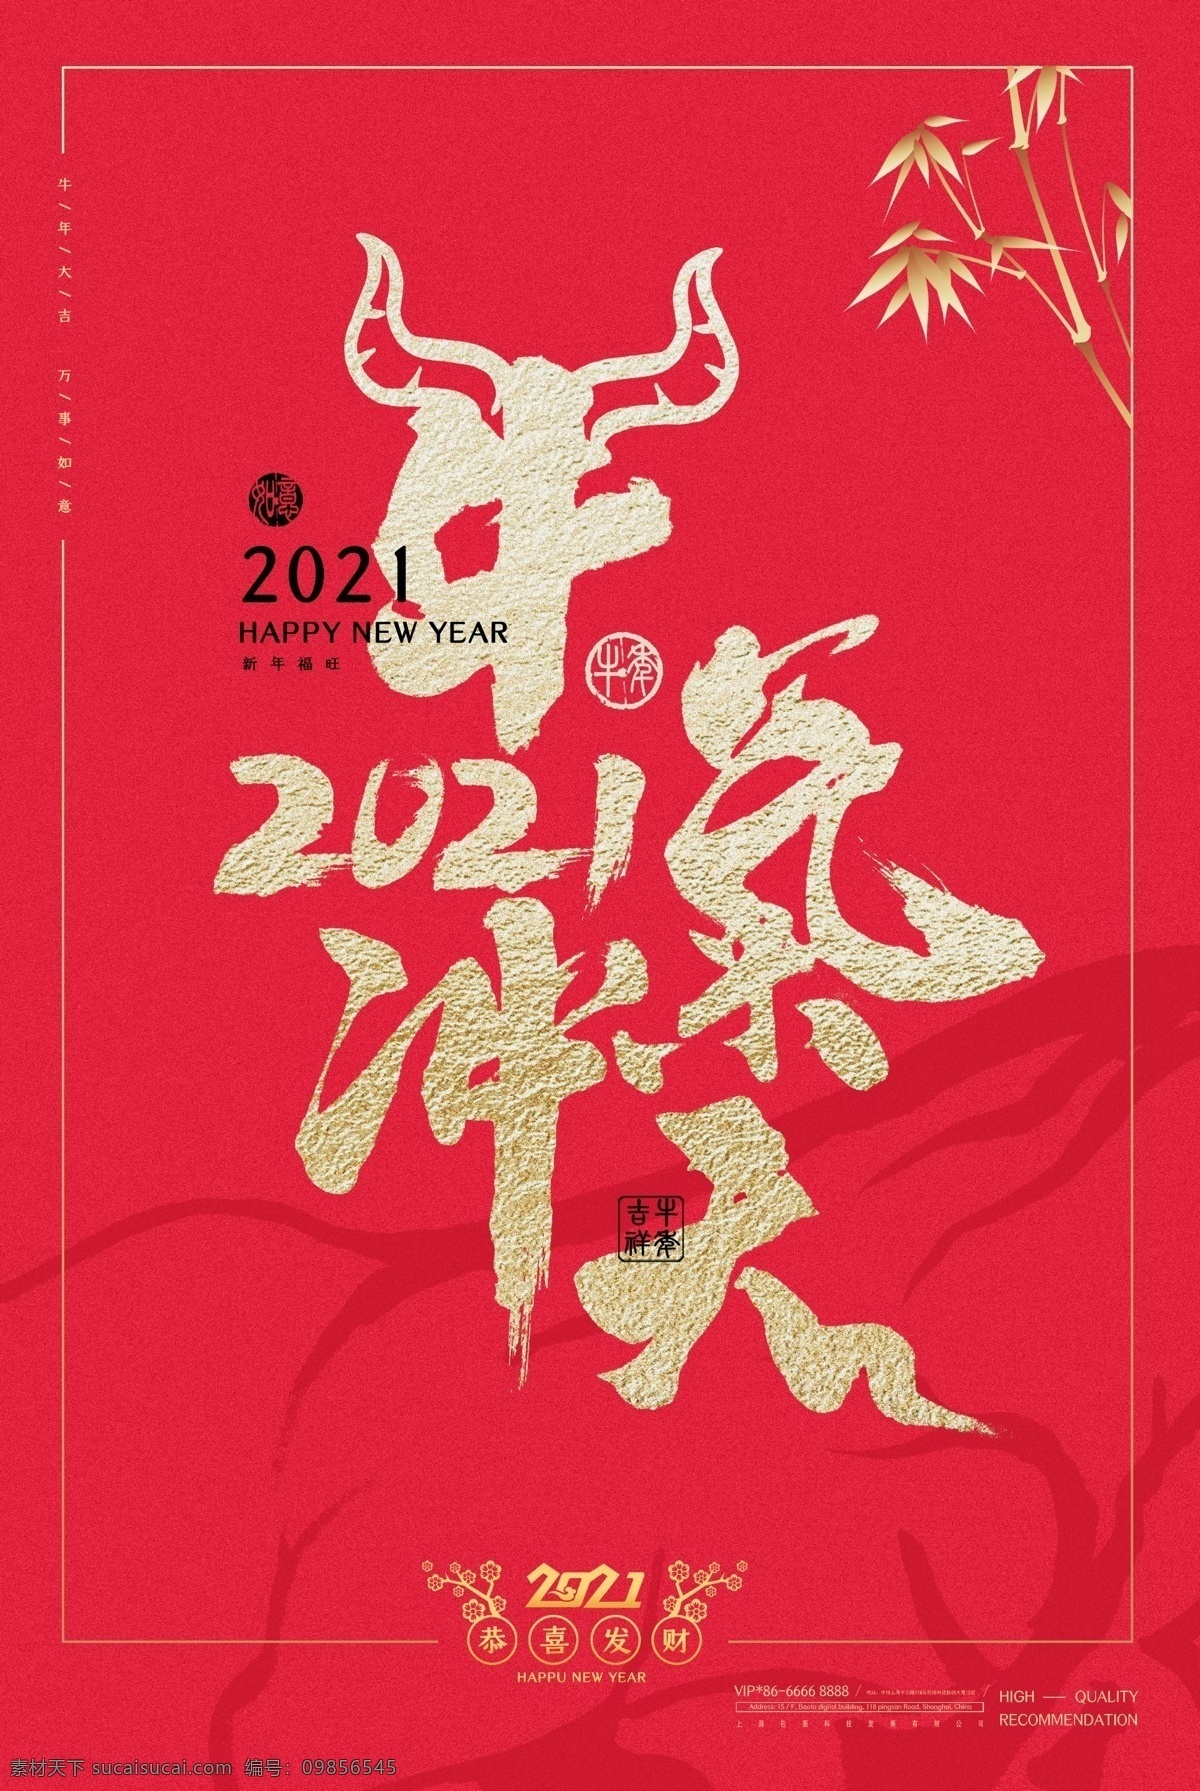 2021 牛气冲天图片 牛气 冲天 海报 新年快乐